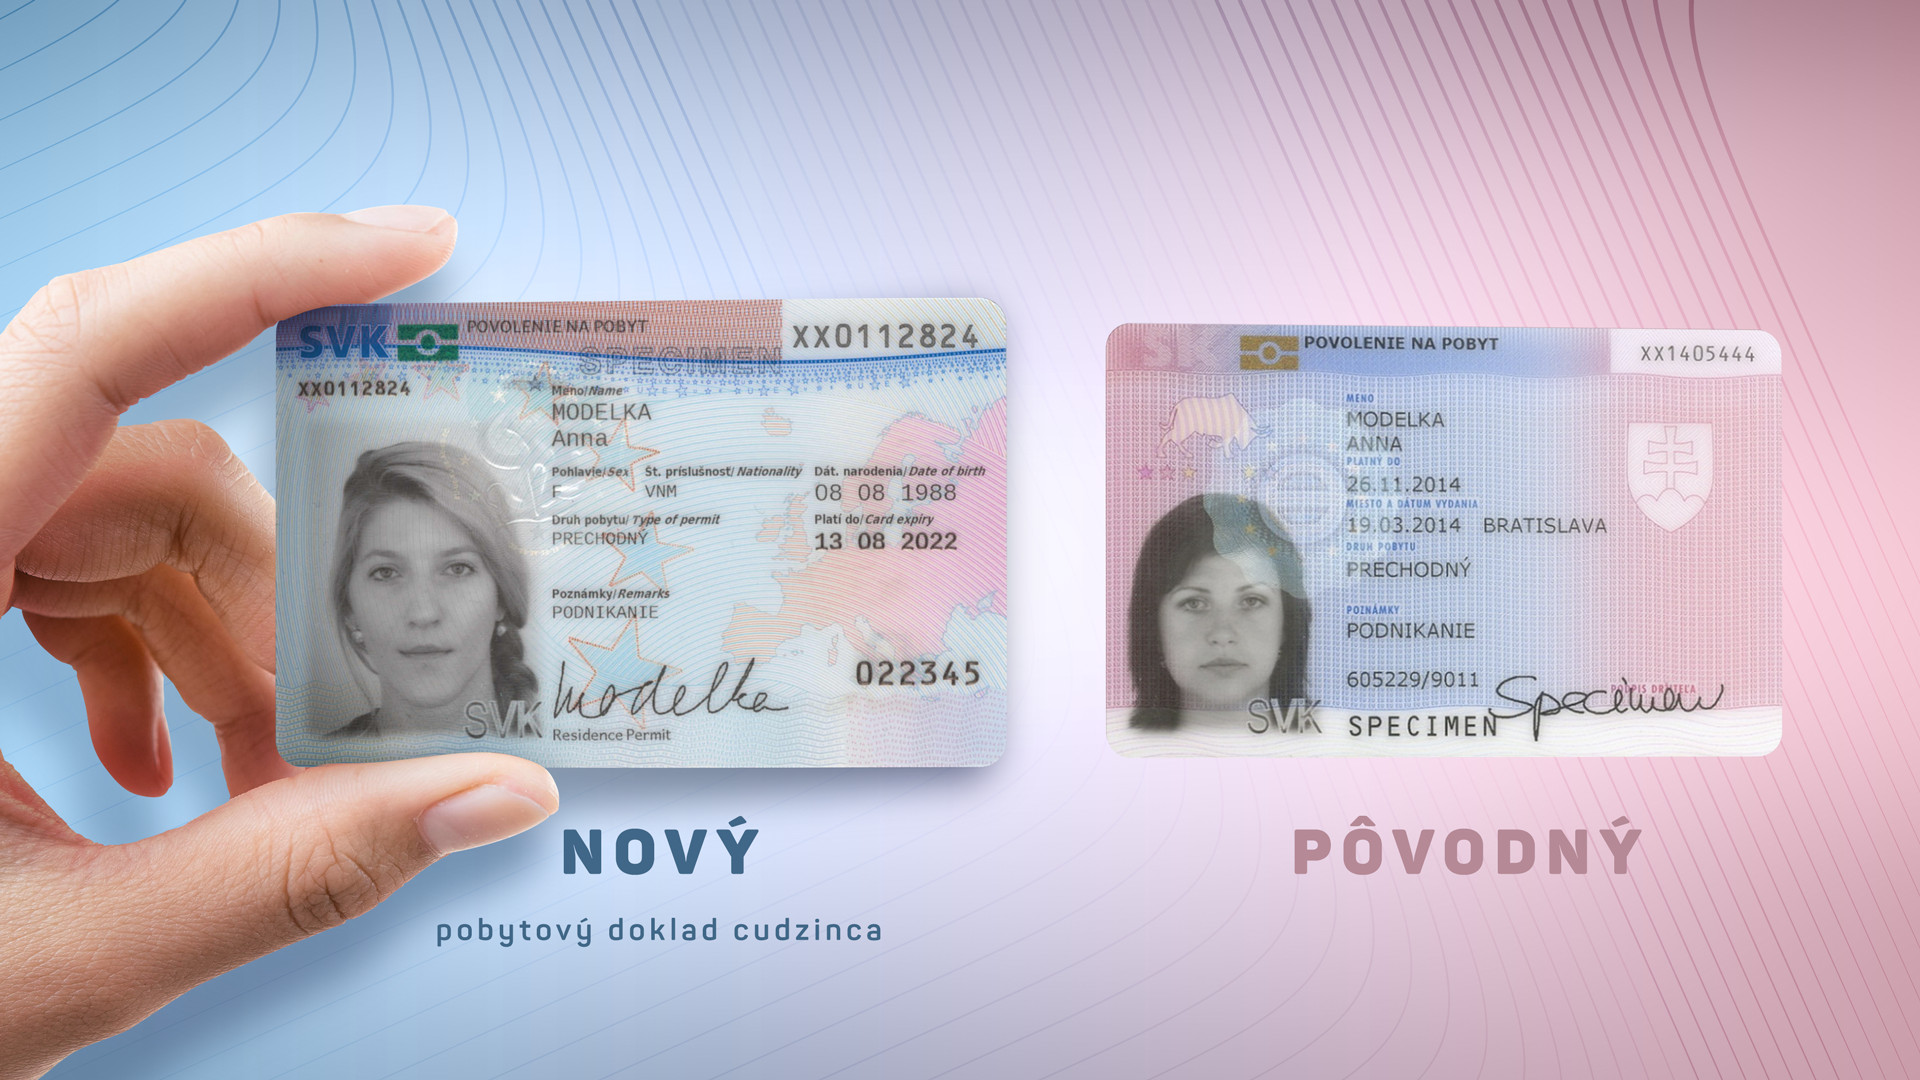 Вид на жительство в чехии для россиян: как получить или продлить внж гражданину рф в 2020 году